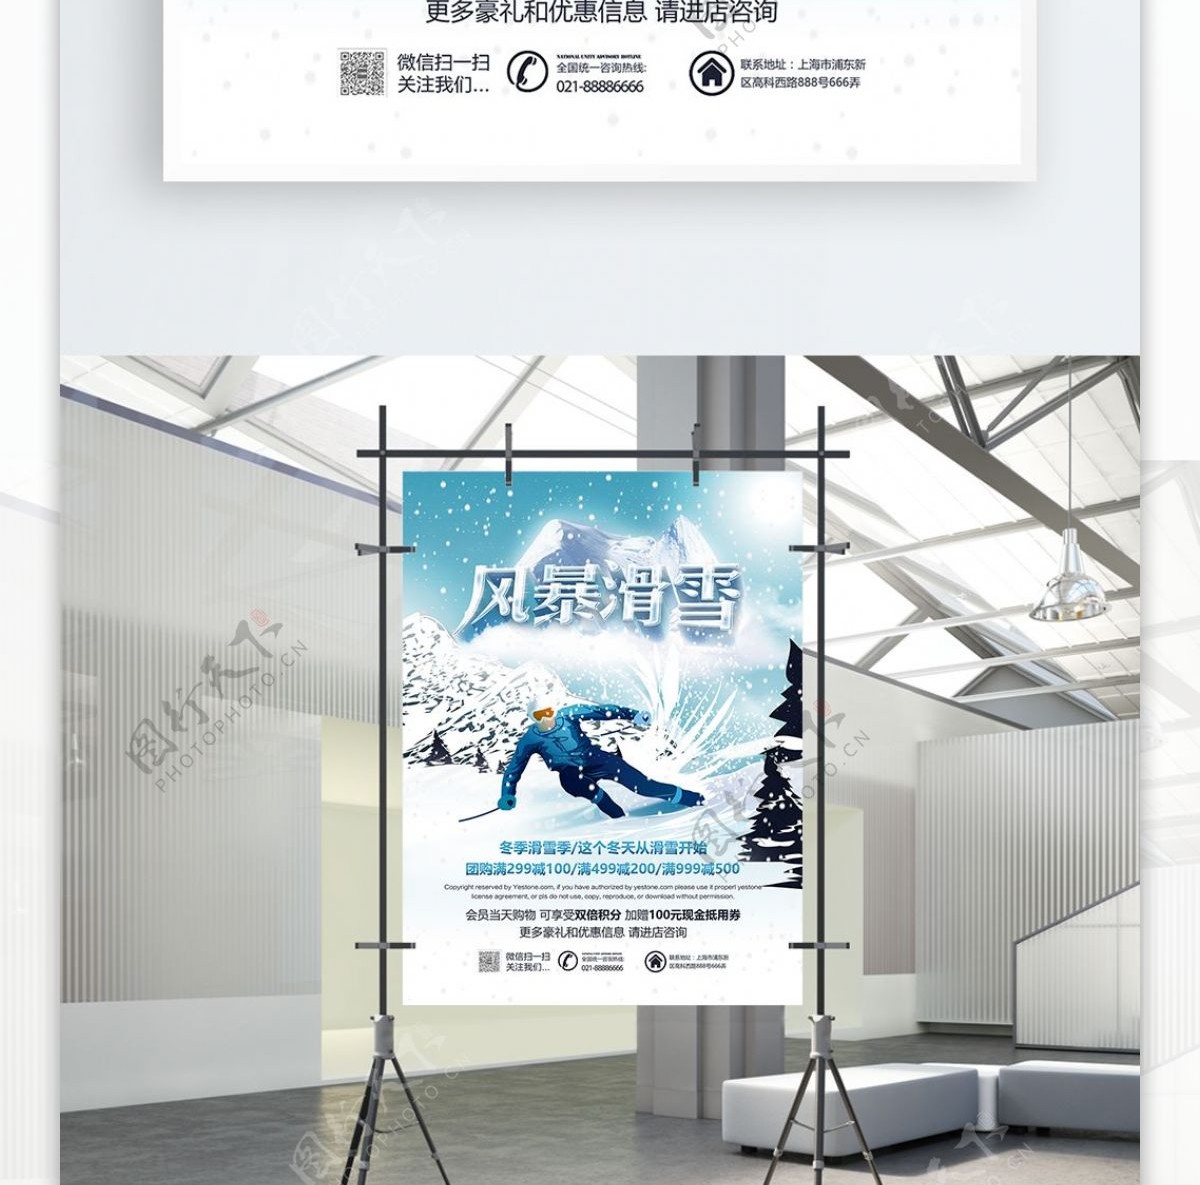 冬季风暴滑雪促销活动海报PSD源文件